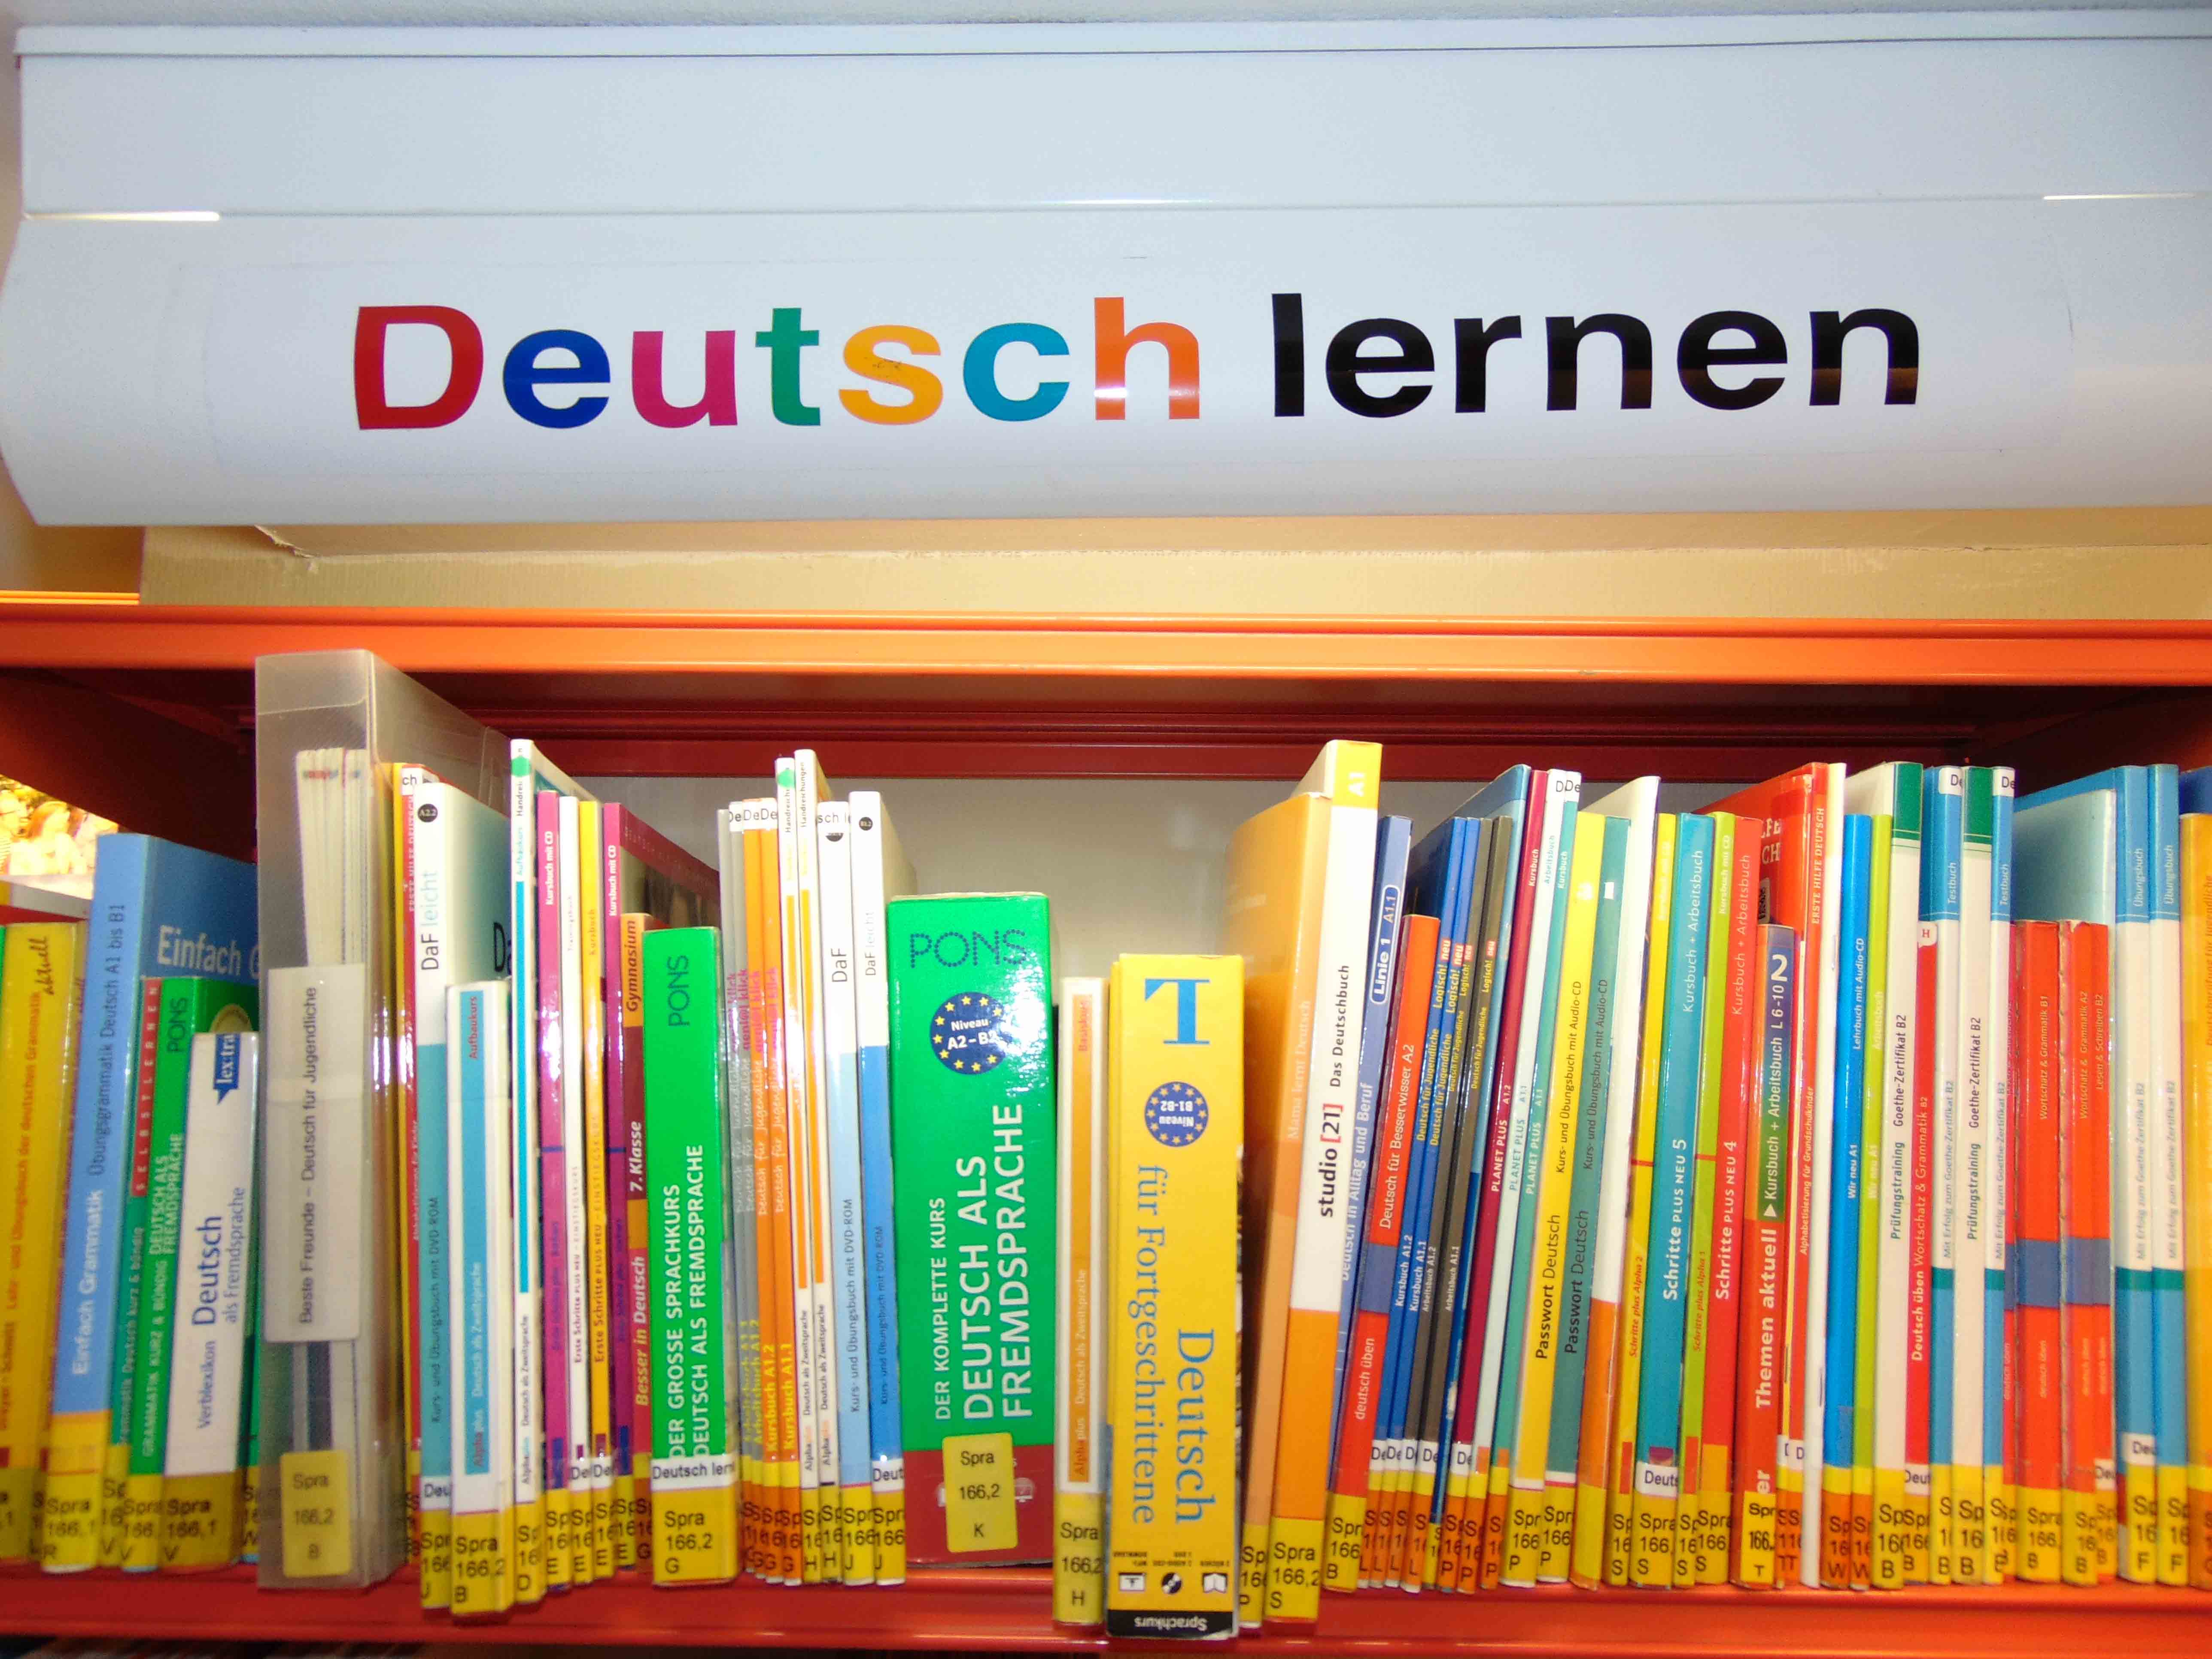 Foto: Regal mit Büchern zum Deutsch lernen